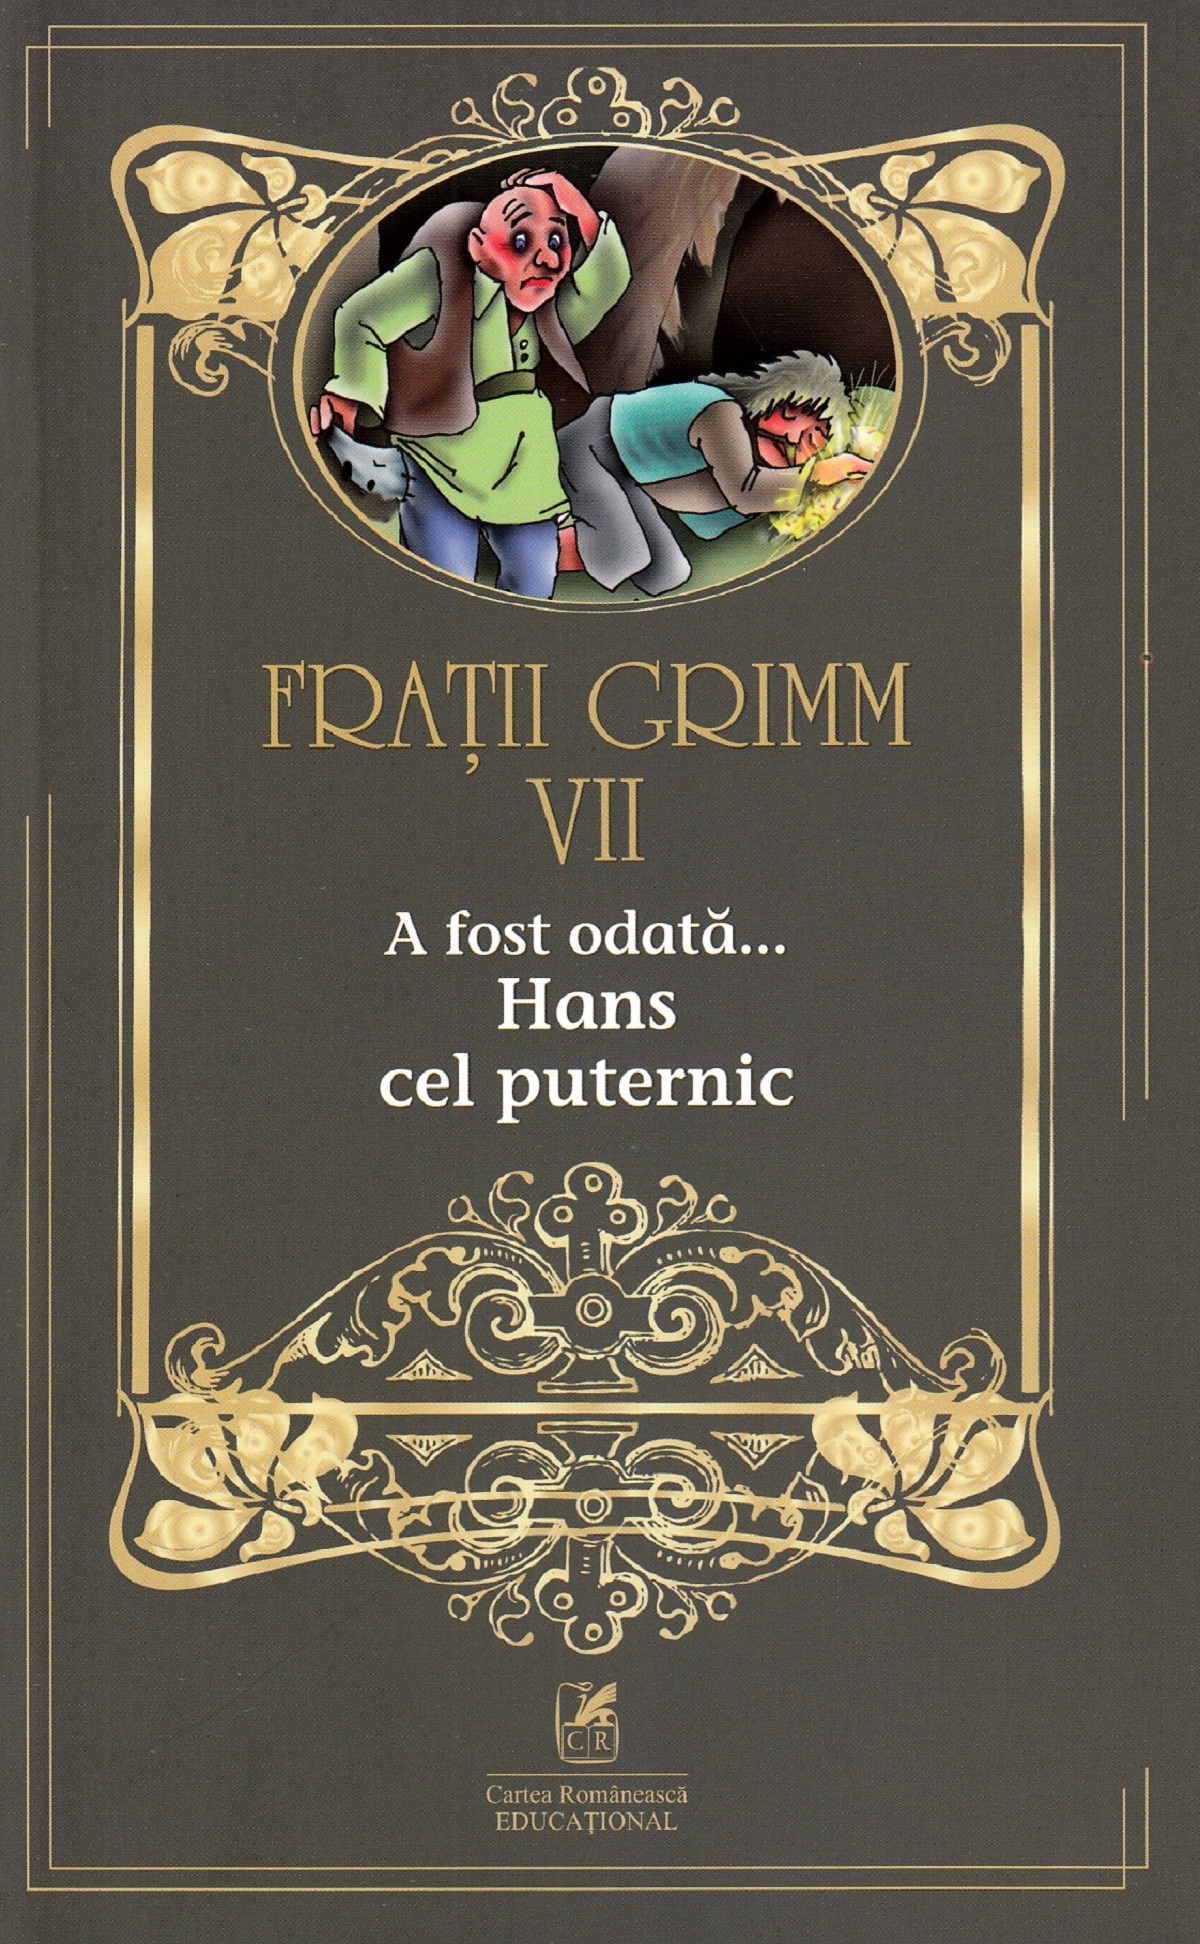 PDF A fost odata…Hans cel puternic | Fratii Grimm Cartea Romaneasca educational Bibliografie scolara